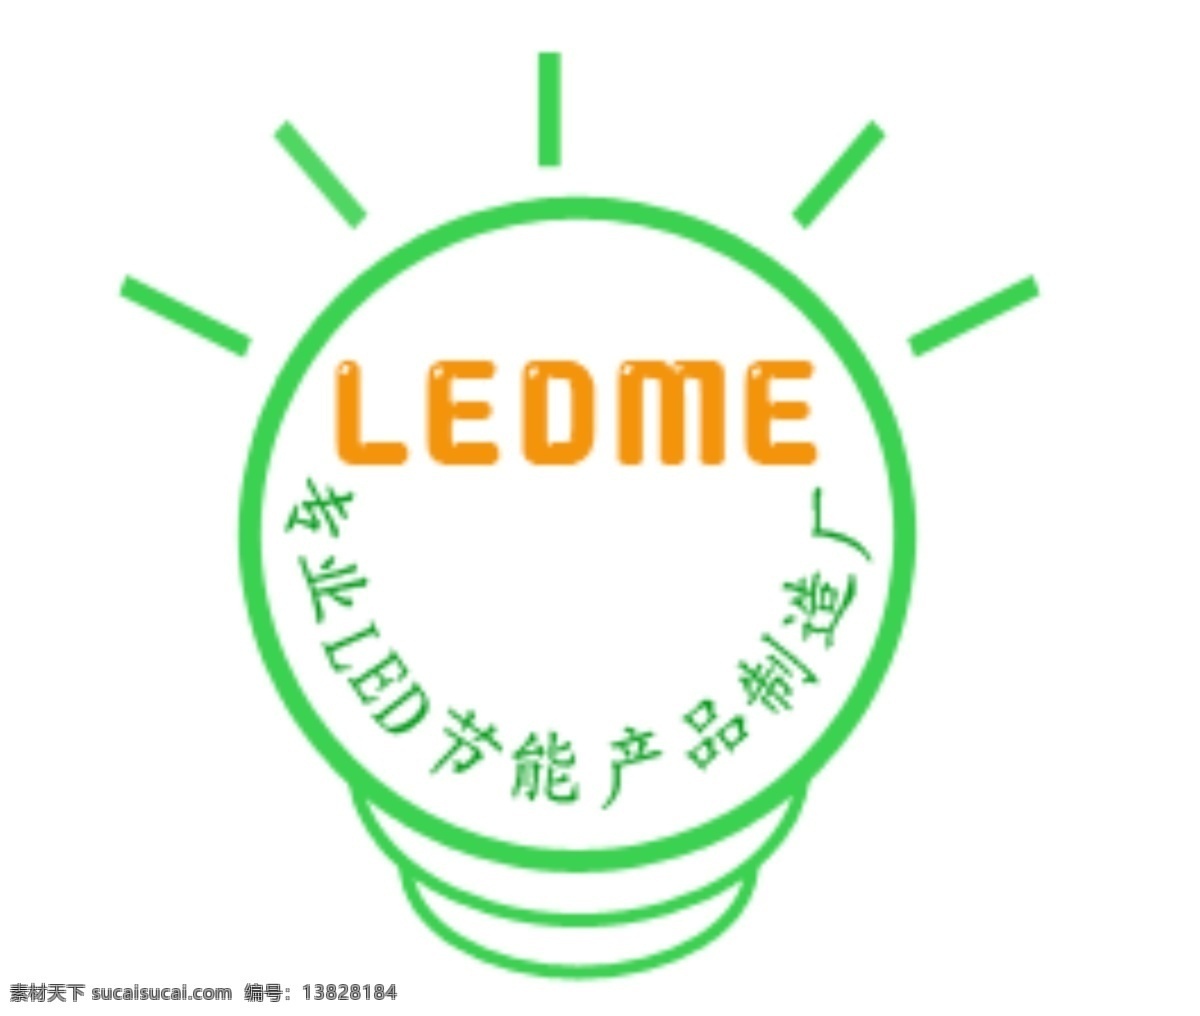 节能产品 logo led 标志设计 广告设计模板 节能 源文件 psd源文件 logo设计